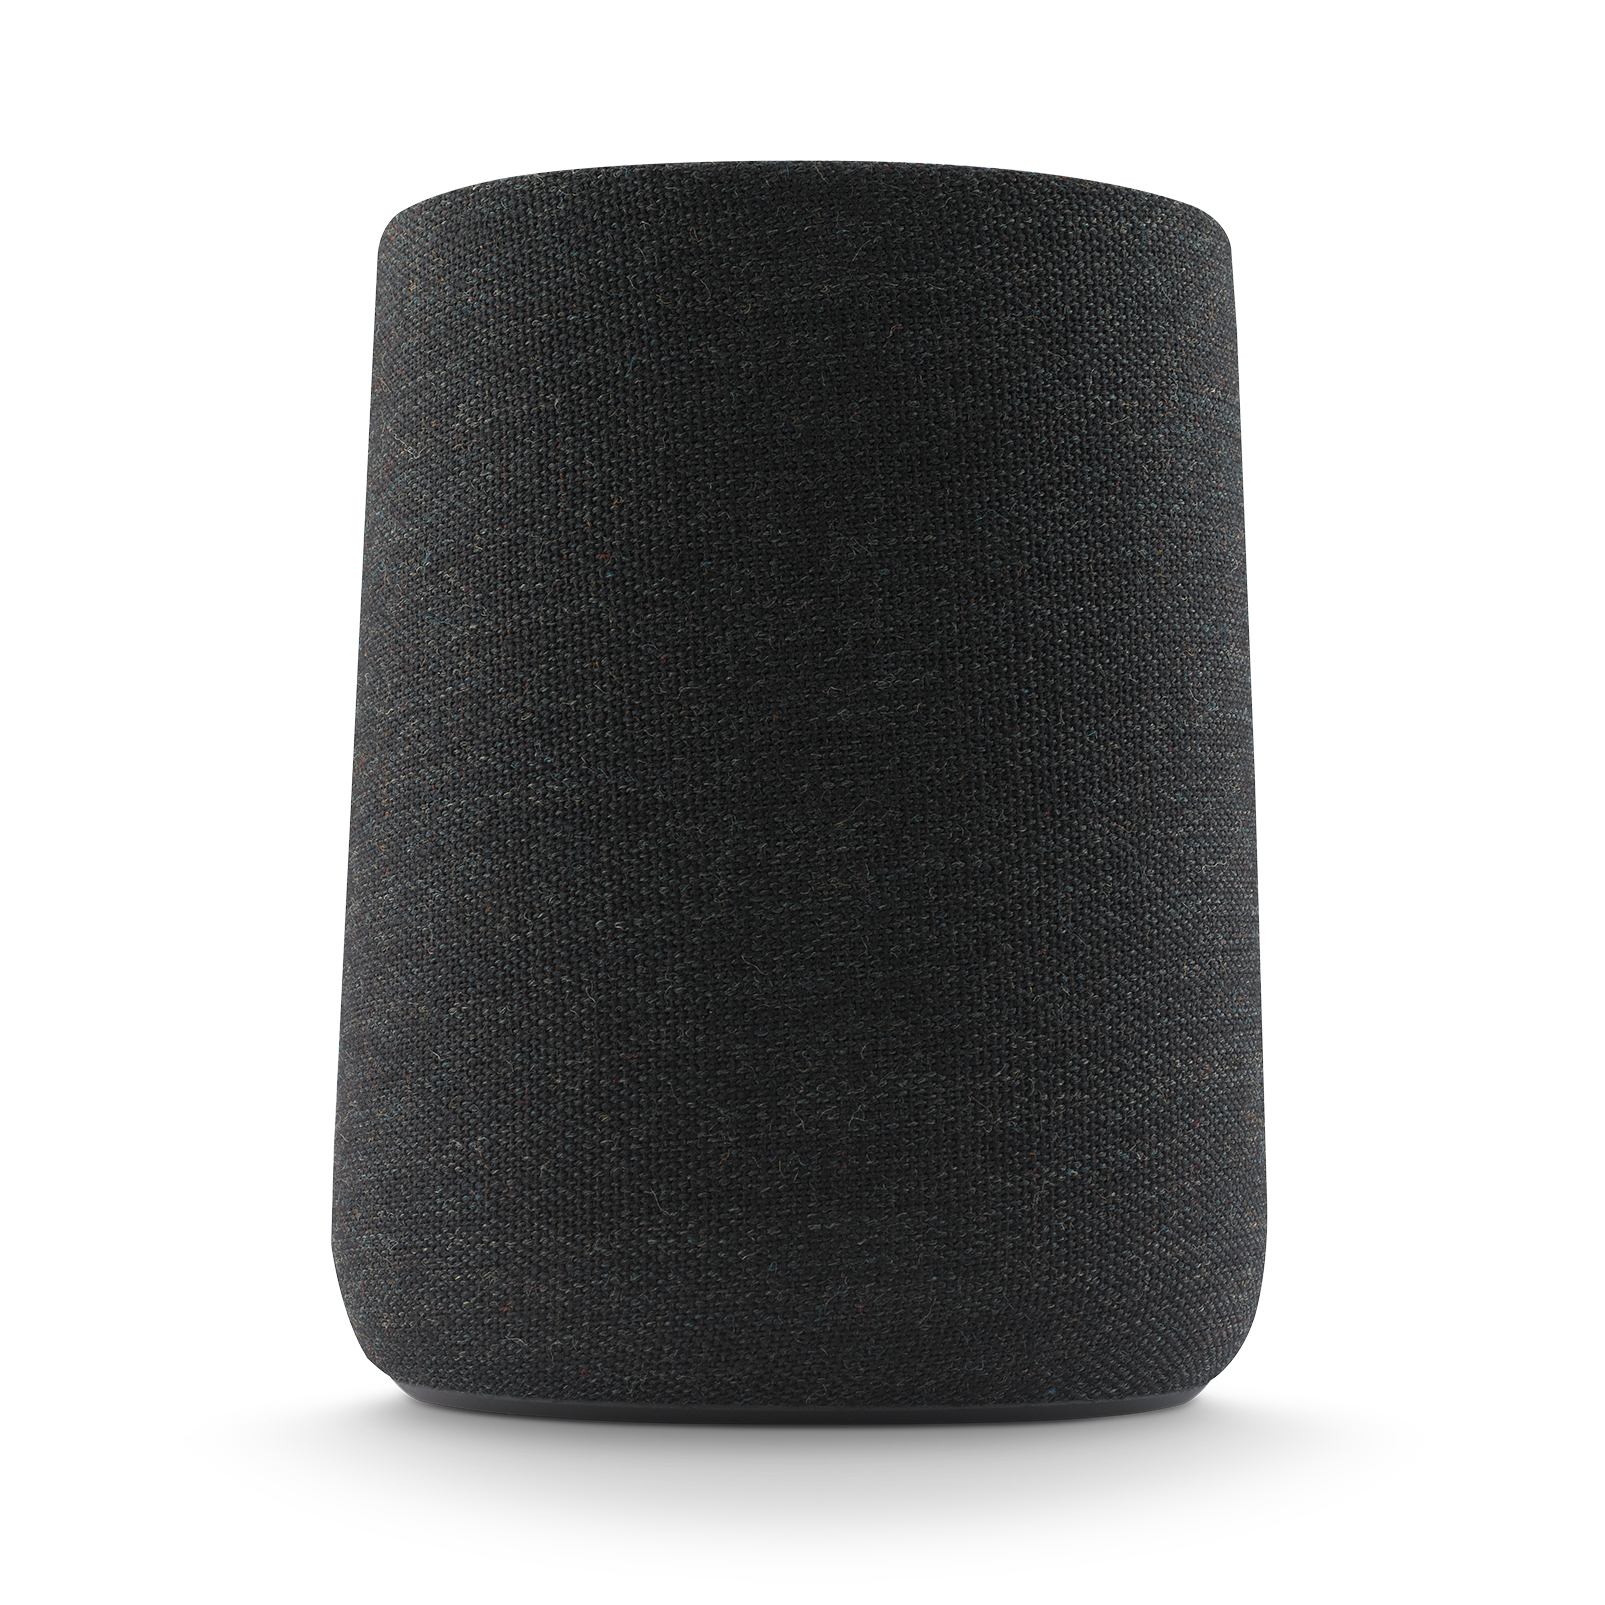 Harman Kardon Citation One MKII - Black - All-in-one smart speaker with room-filling sound - Detailshot 1